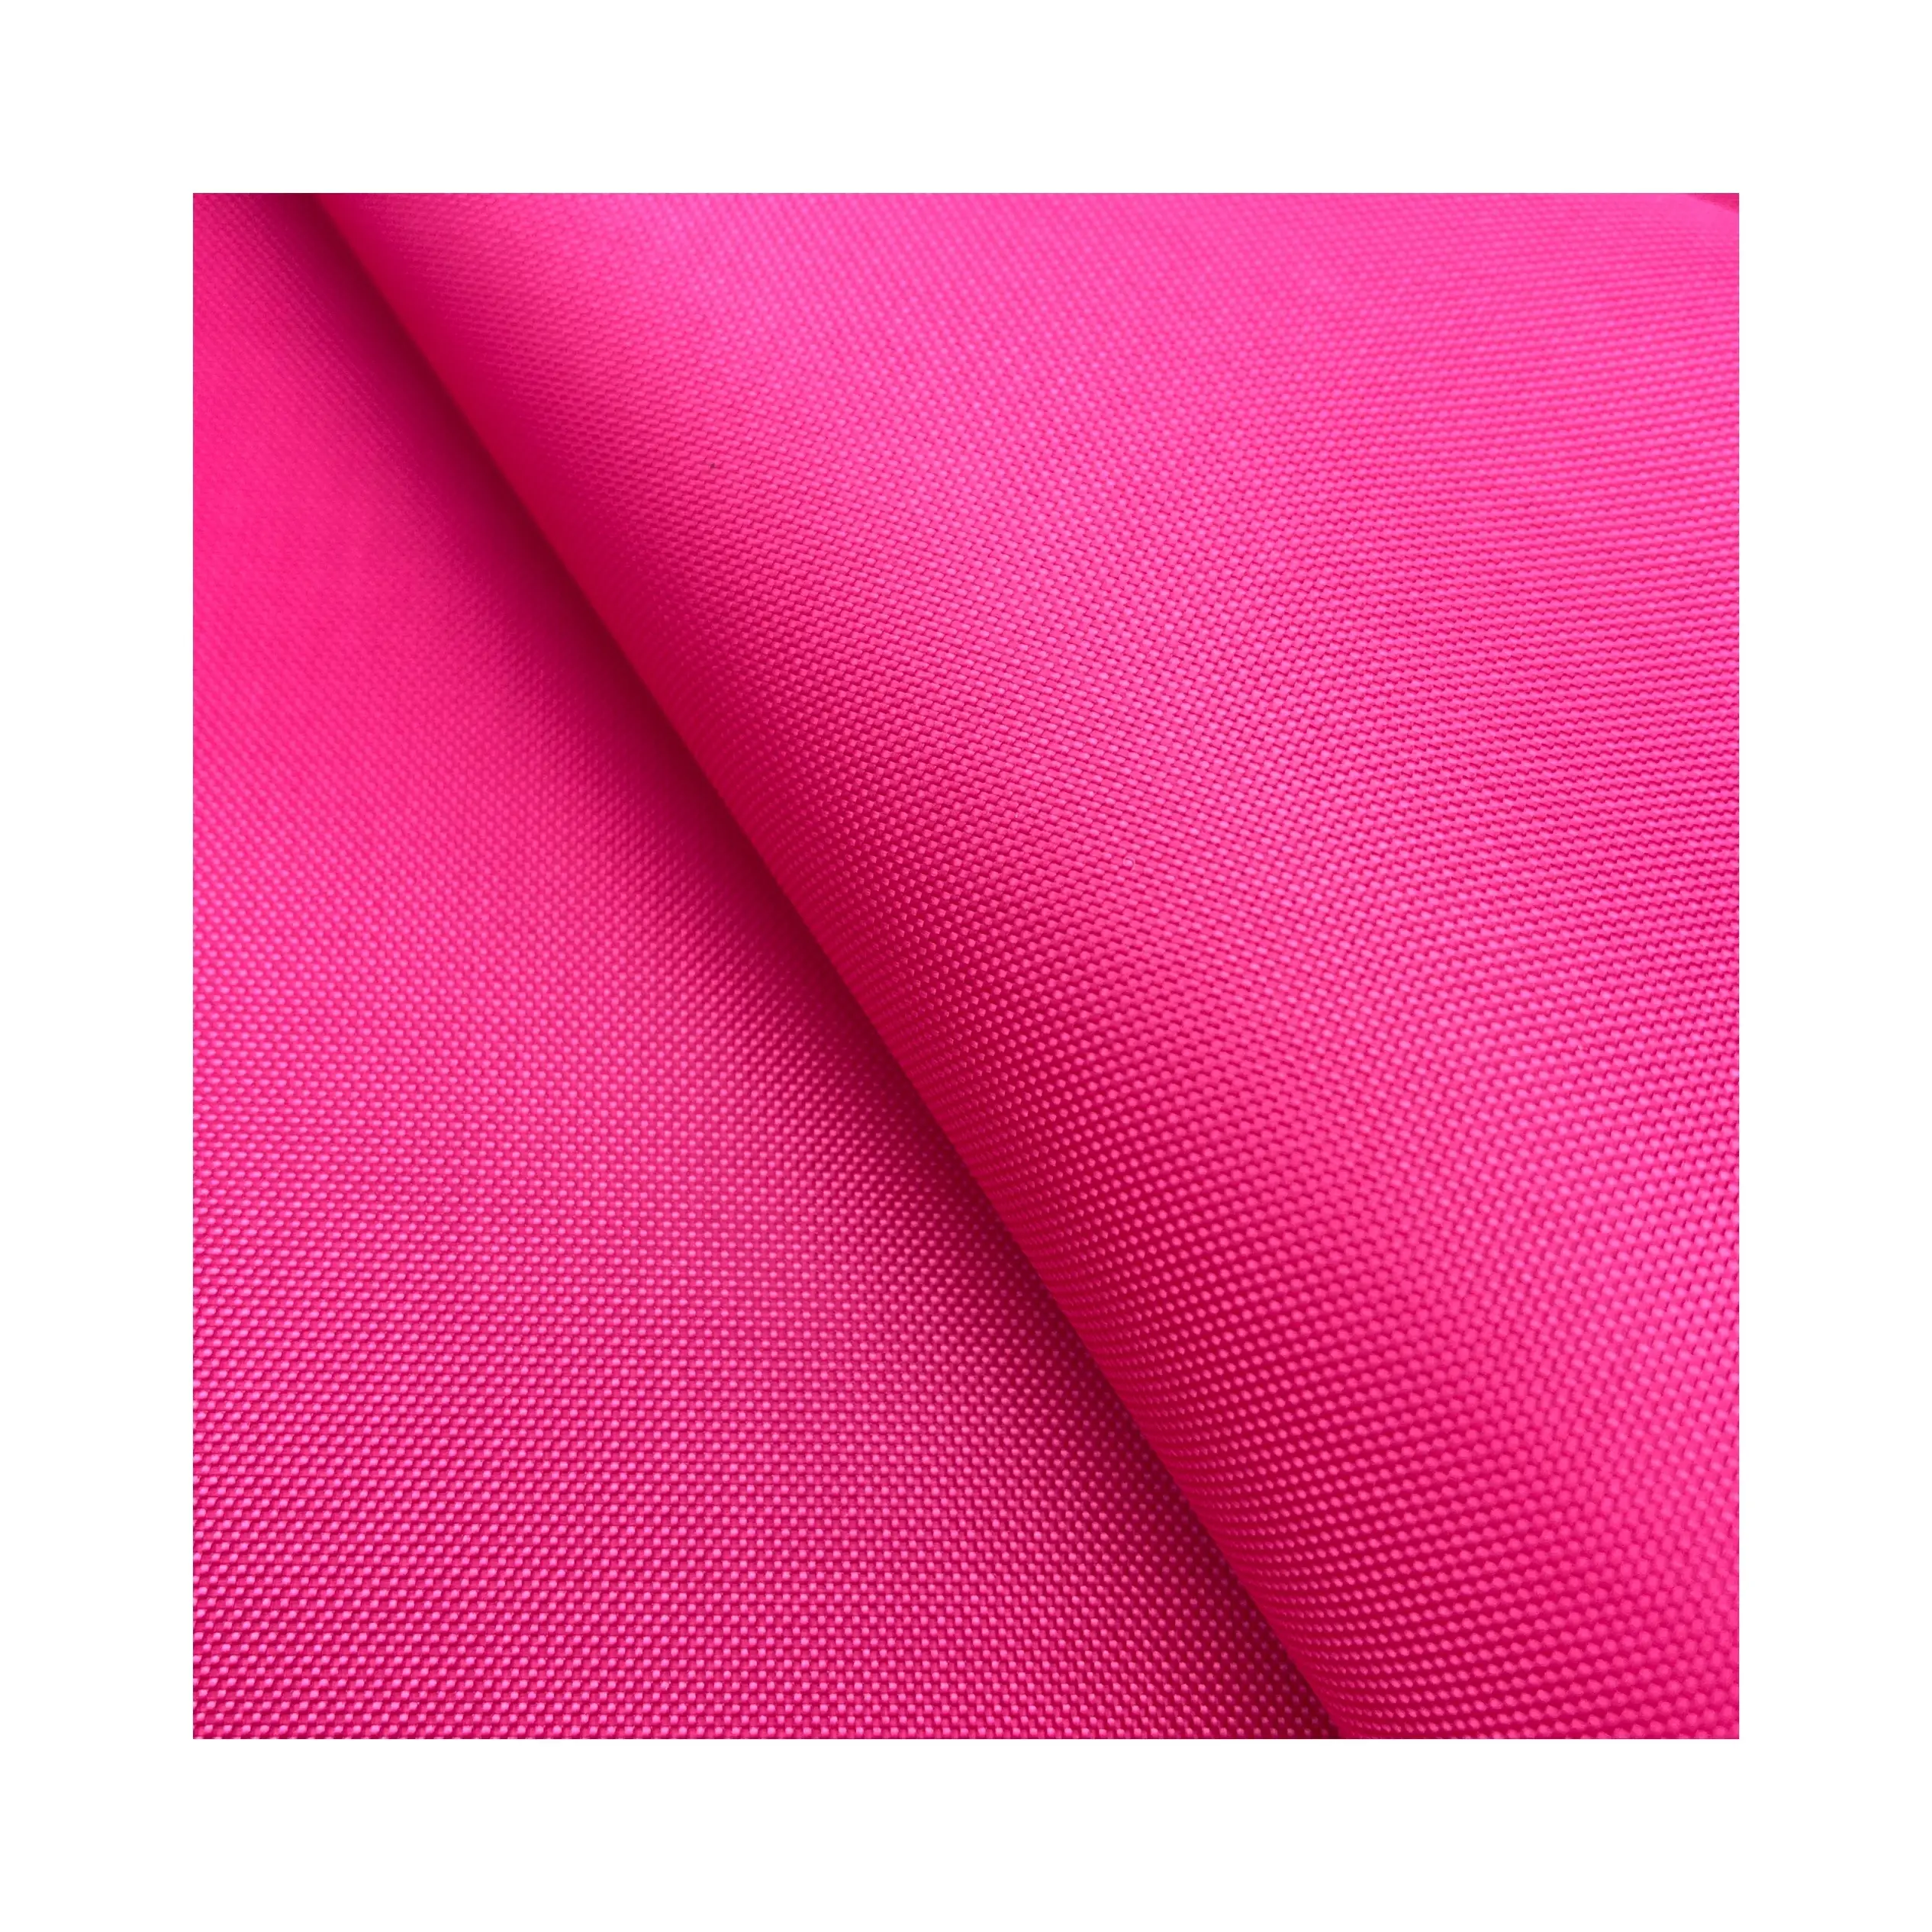 100% Polyester tissé imperméable rouleau tissu PU enduit Oxford tissu pour extérieur imperméable Camping tente sac